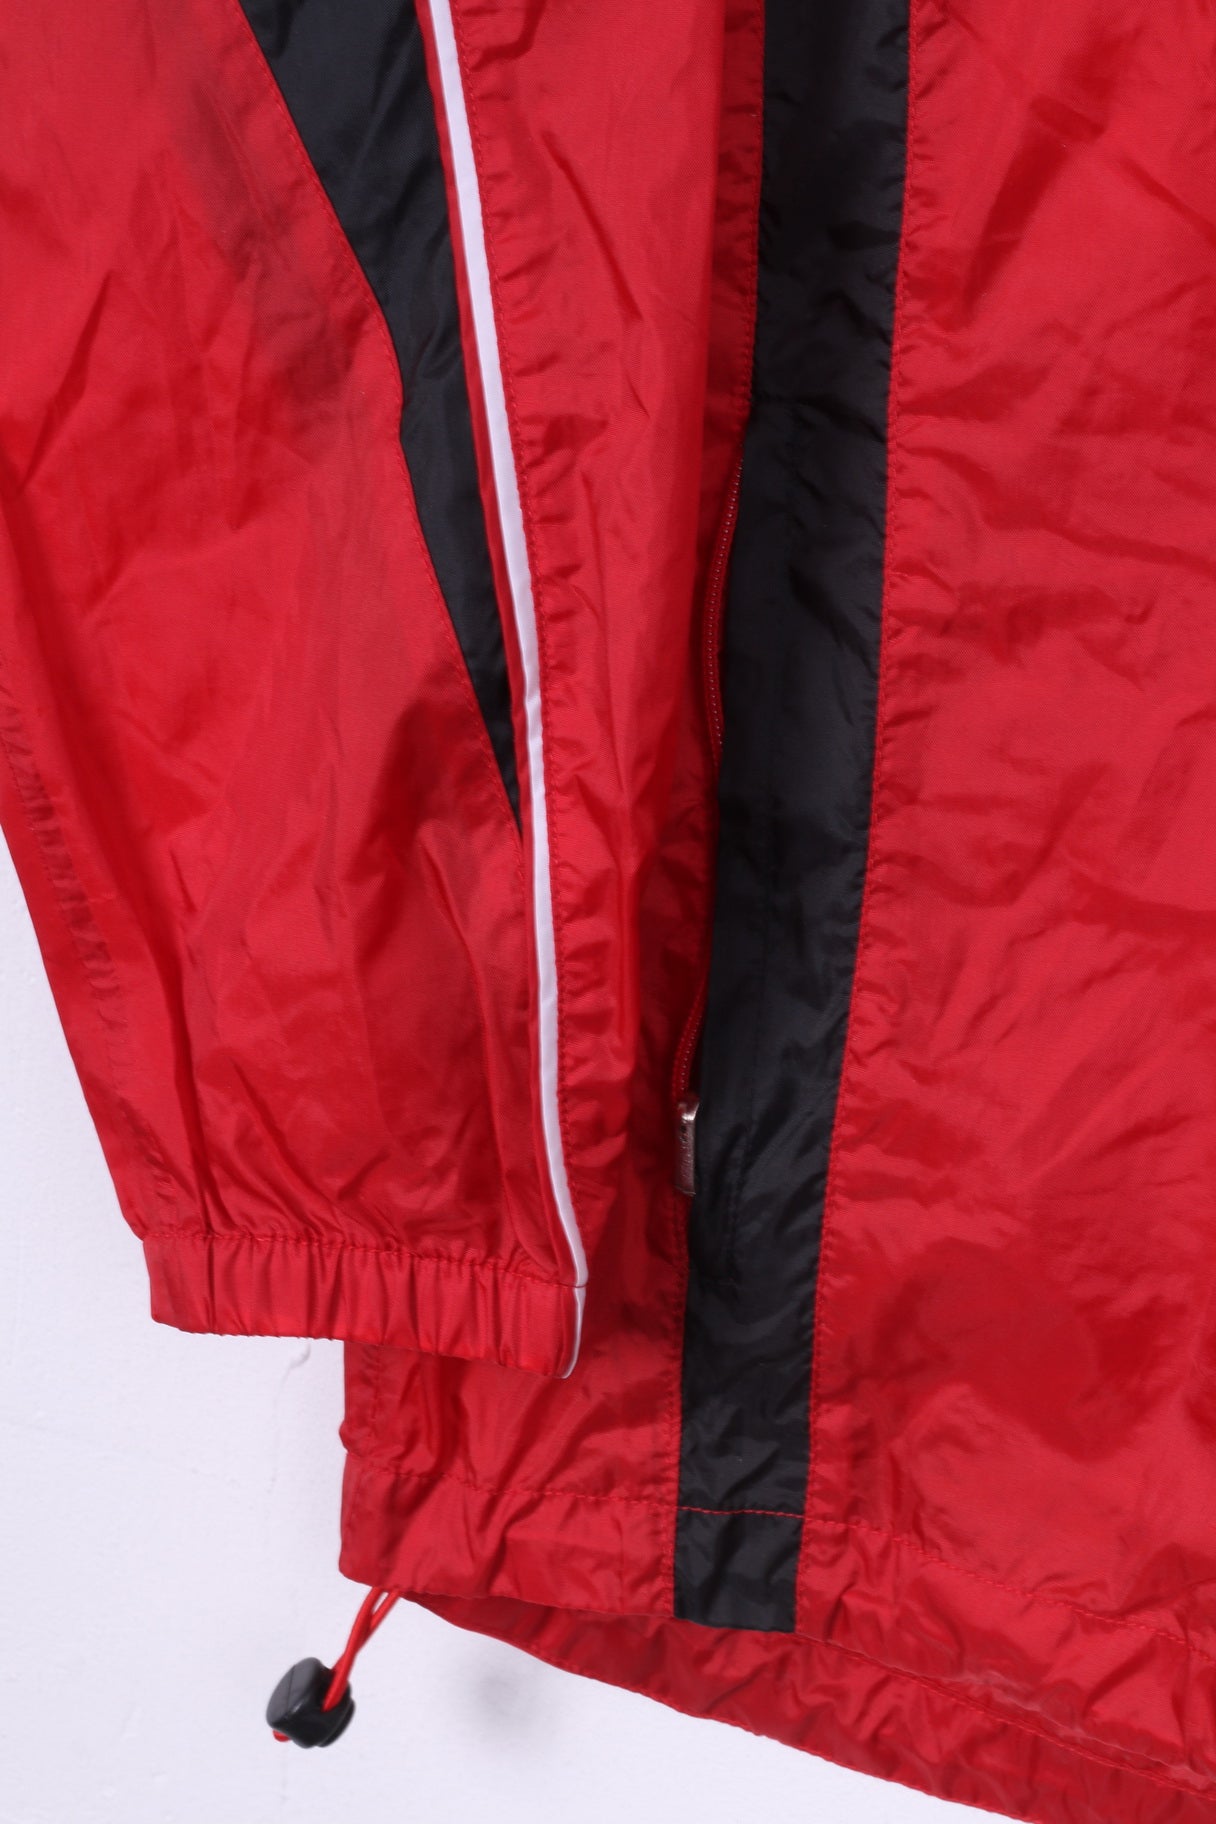 Jako Boys 152 Jacket Lightweight Nylon Waterproof Sportswear Full Zipper Red Hidden Hood